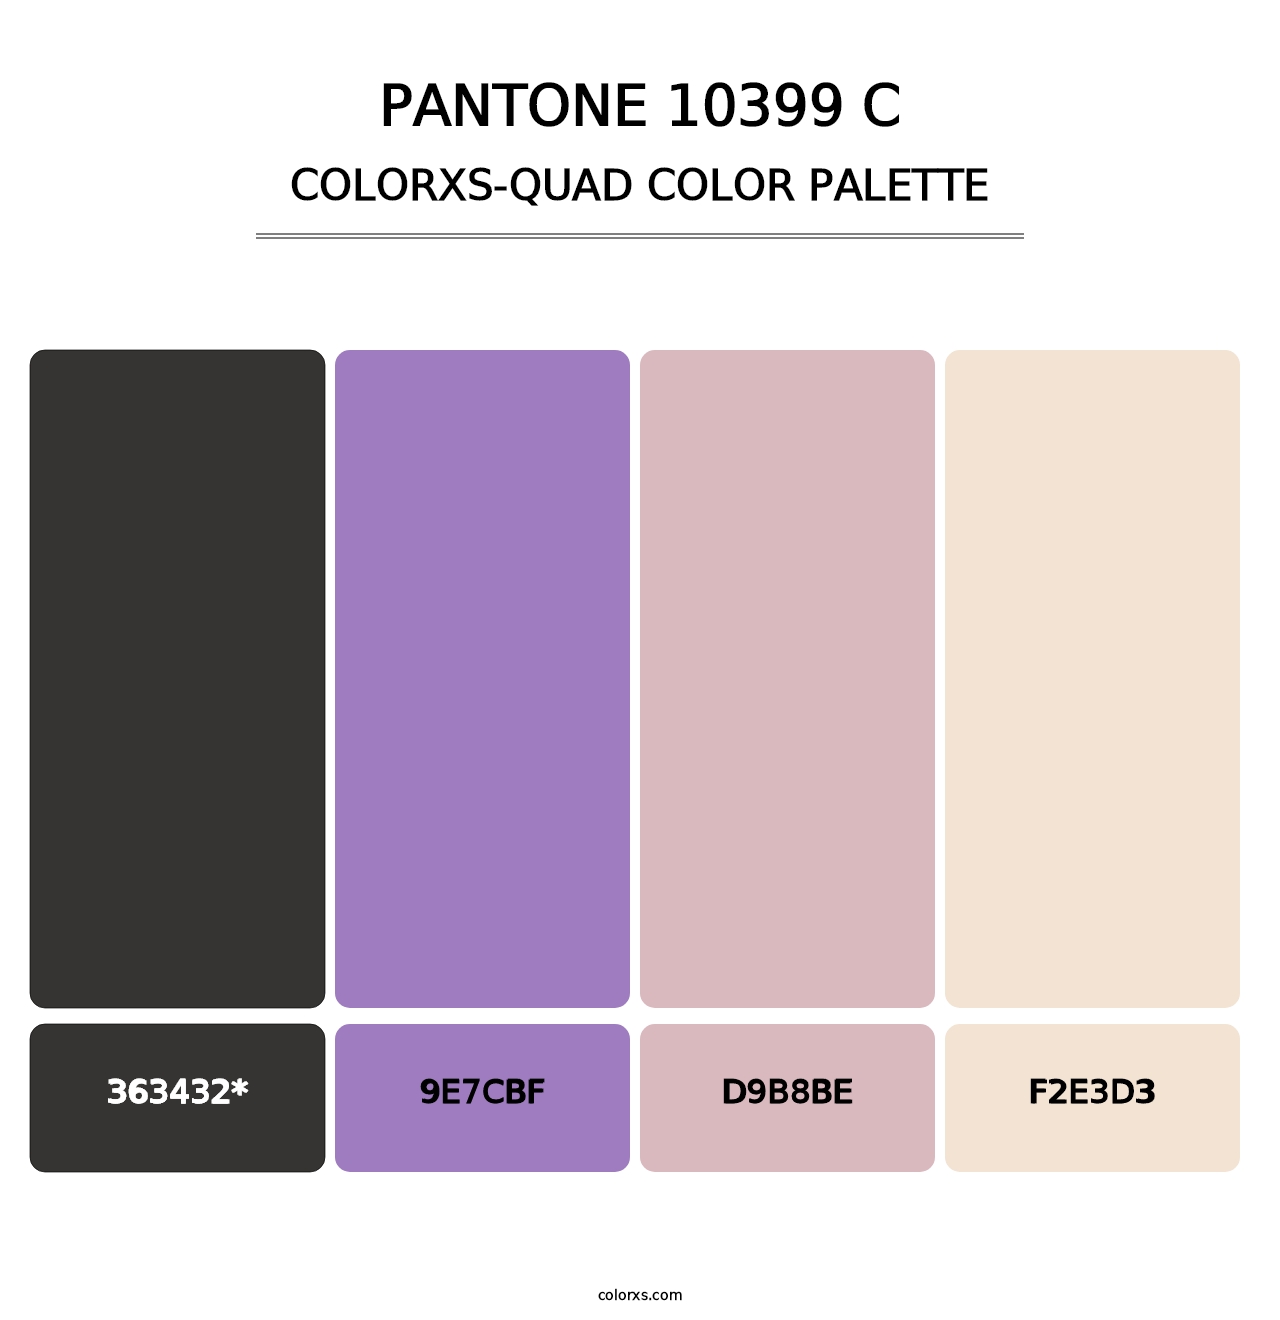 PANTONE 10399 C - Colorxs Quad Palette